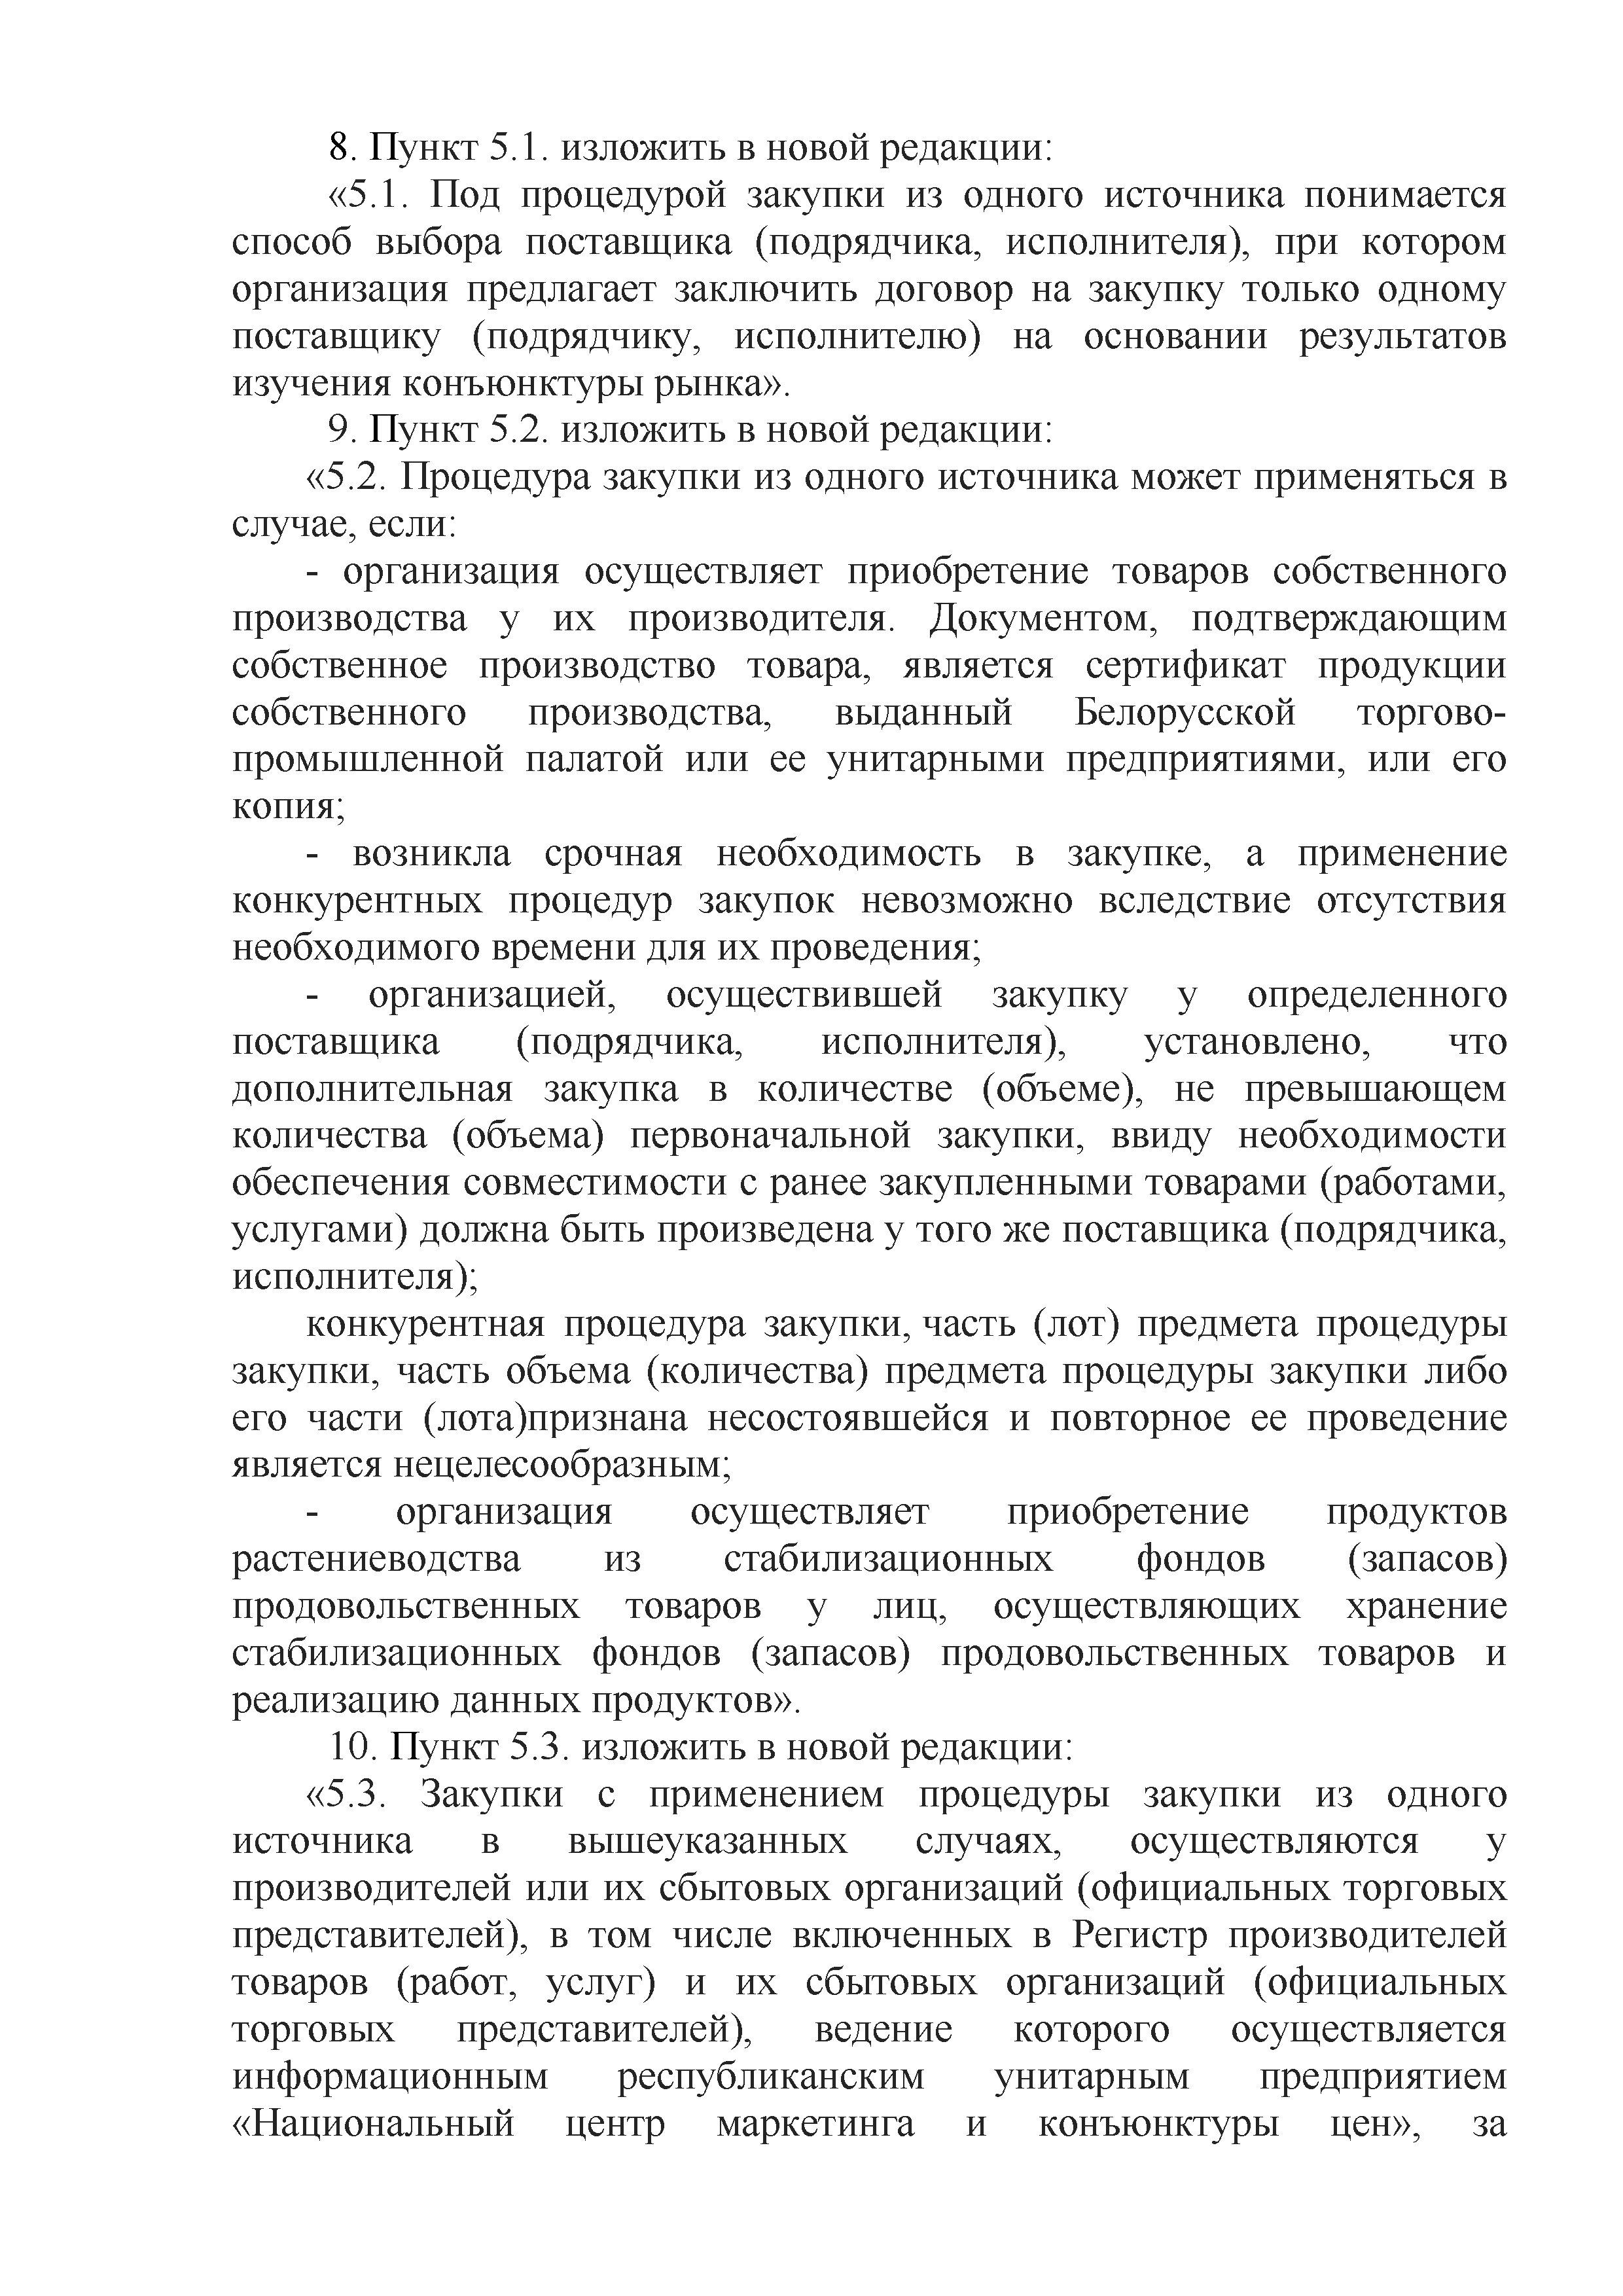 ОАО Торговый дом Сож - Изменения и дополнения 04.10.2022